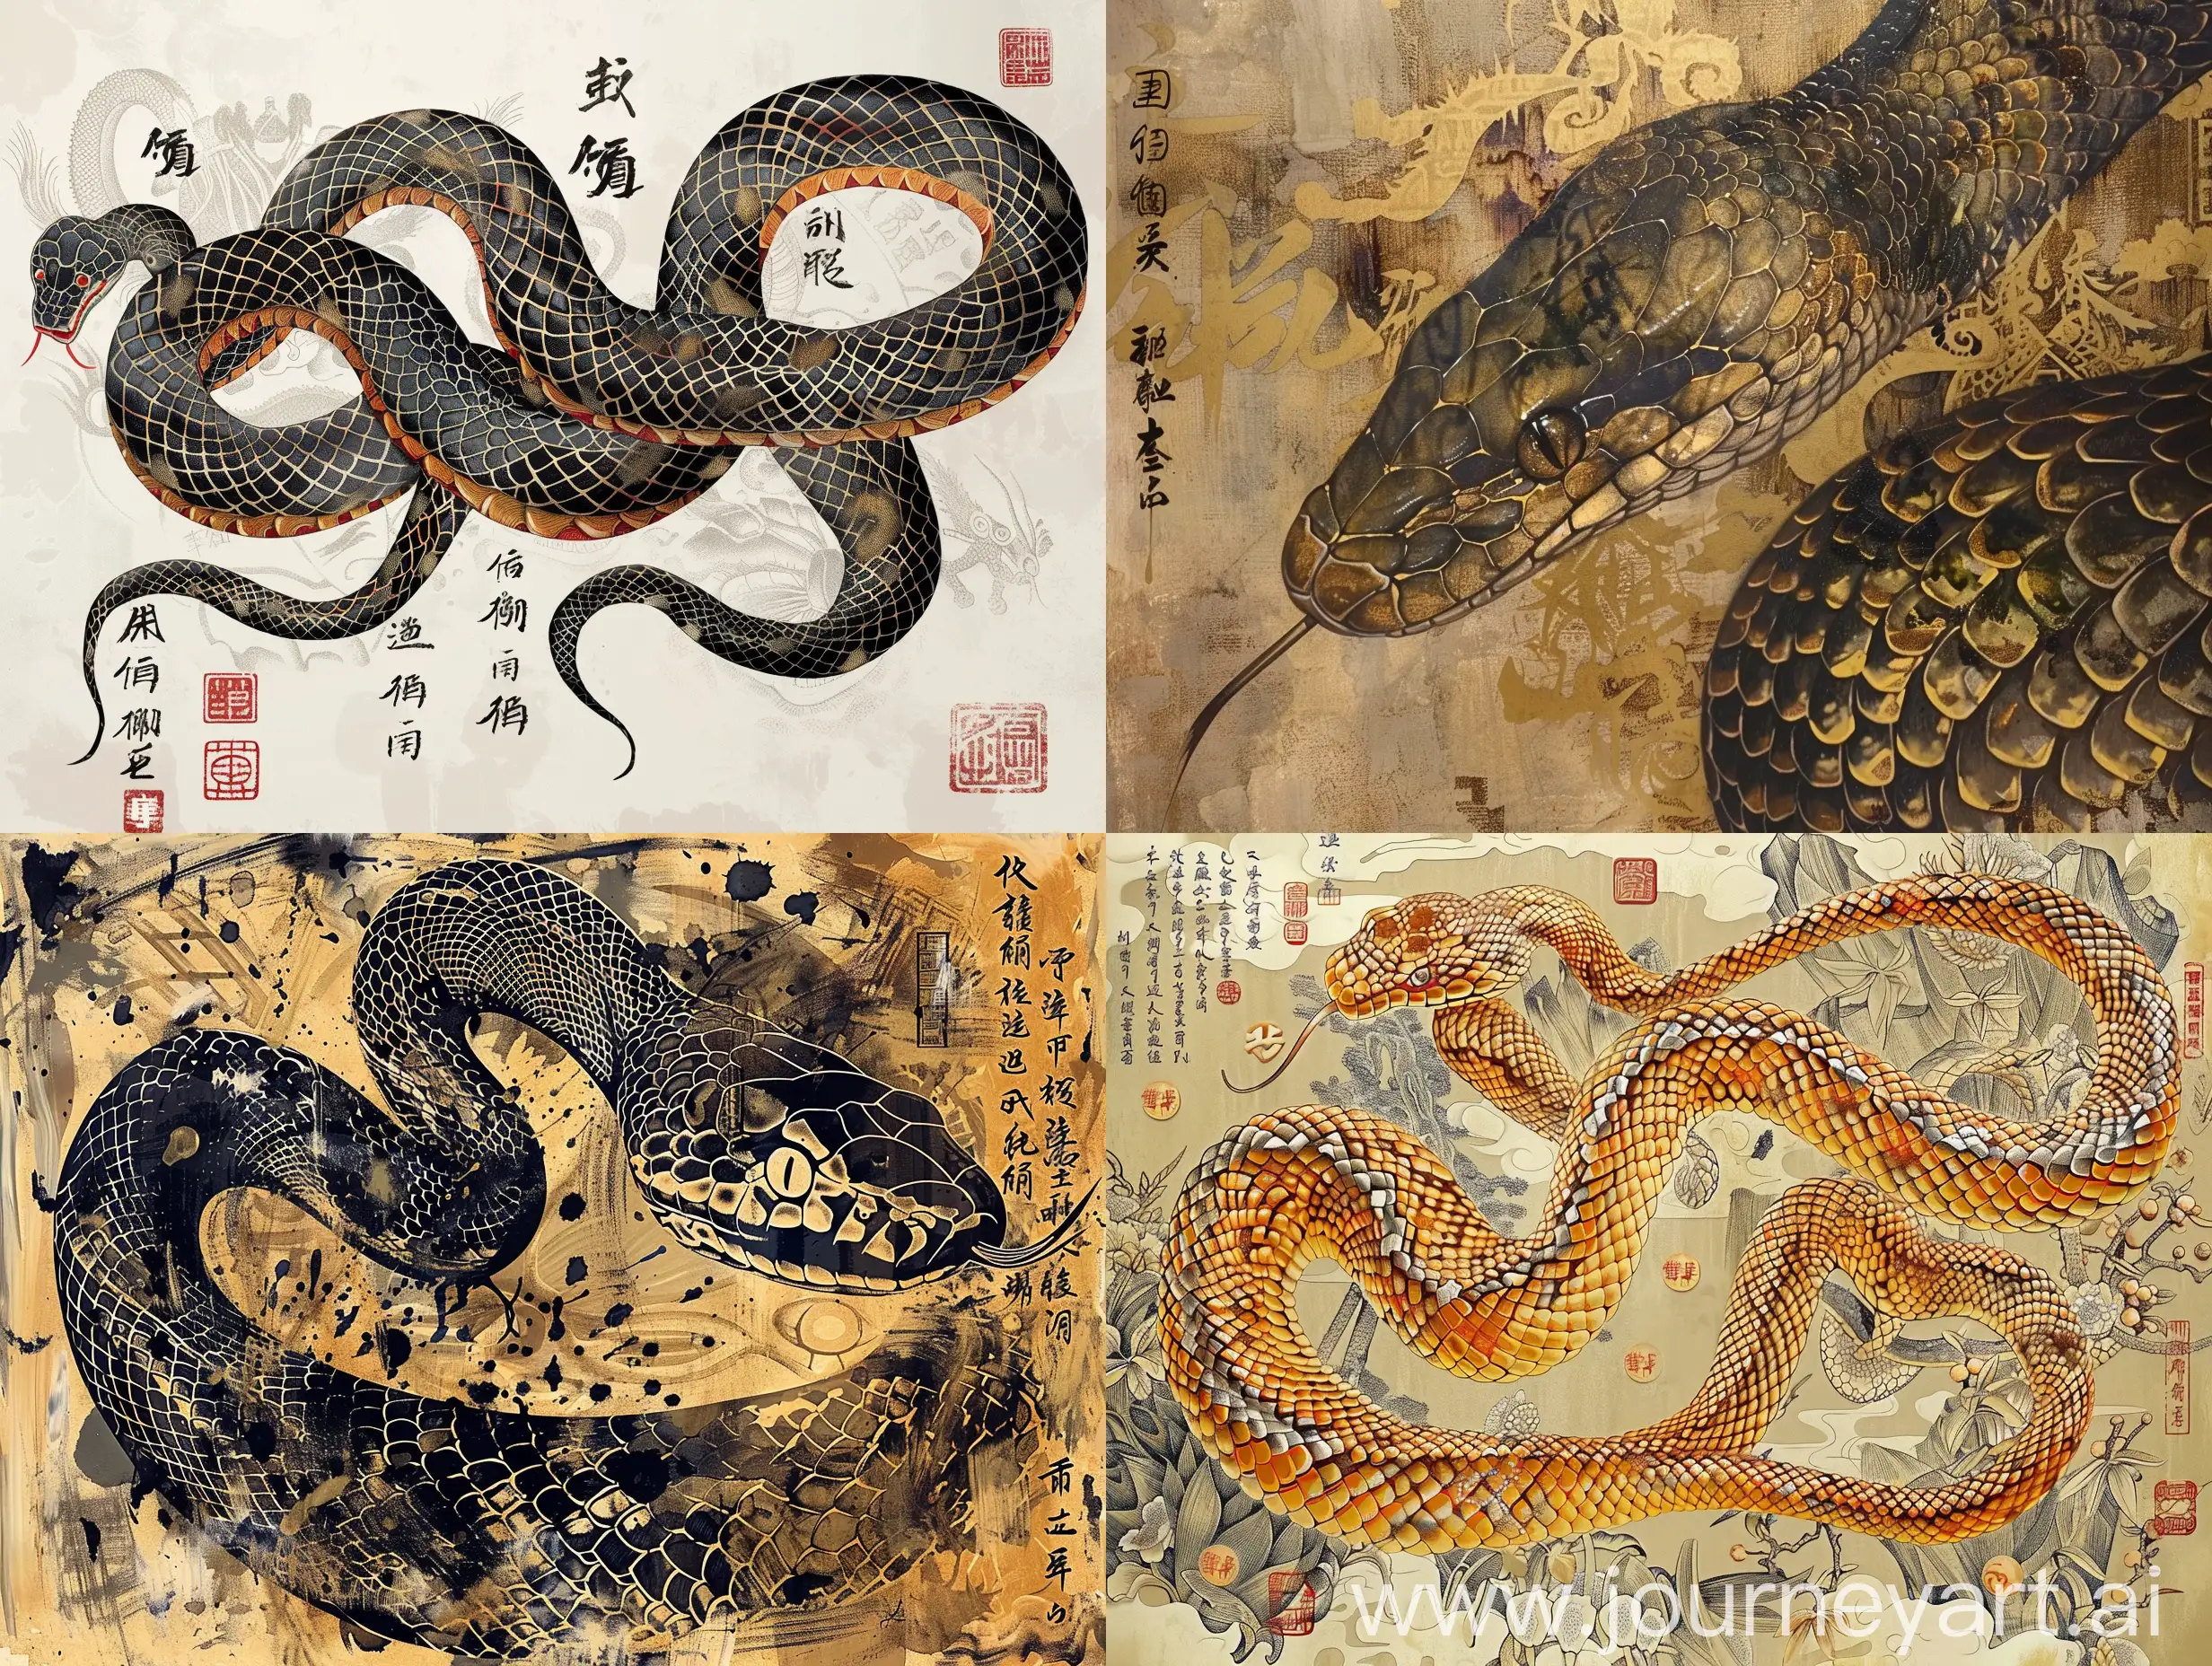 змея ,фэнтази в китайском стиле, чешуя, в орнаментах и иероглифах богатства,традиционная китайская живопись, объемно,, резко везде
